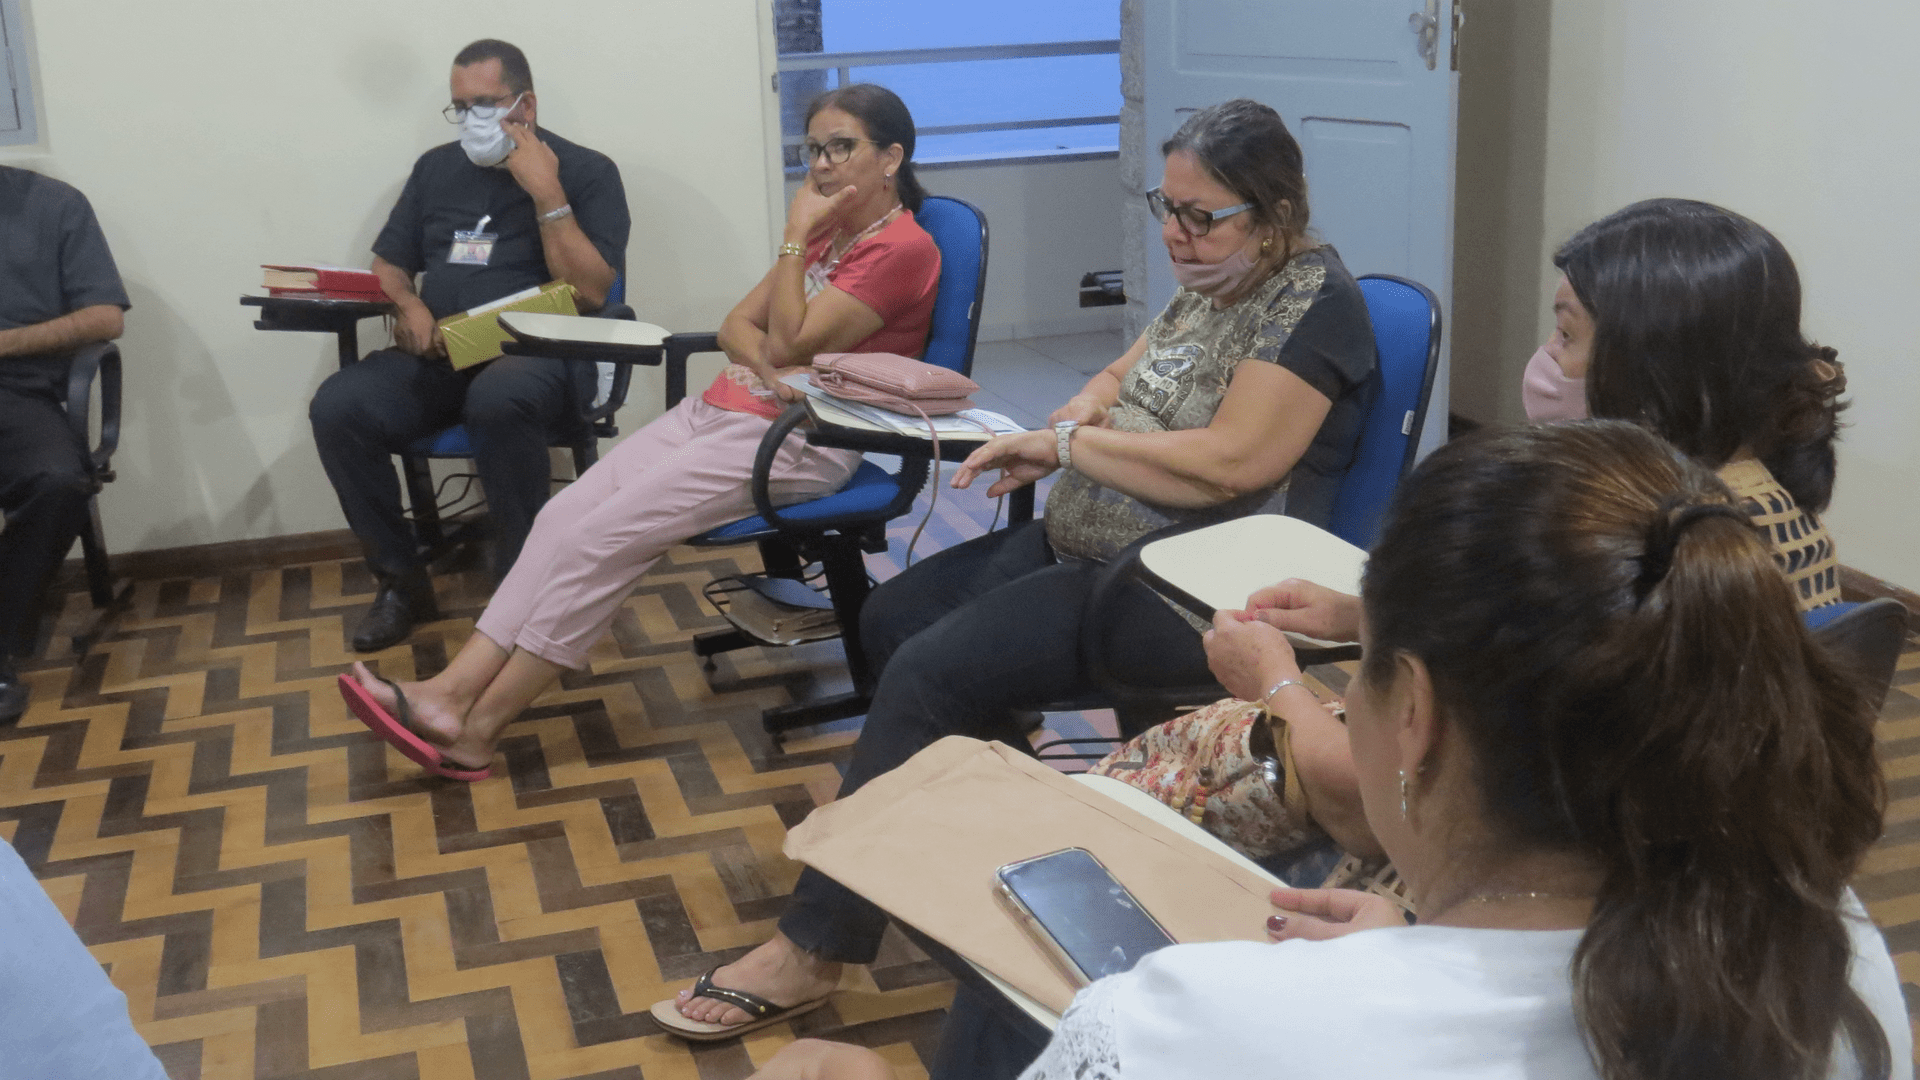 14 Retiro Nacional - Florianópolis - SC : Reunião de novos membros da Comissão Organizadora para eleição do Novo Contato Nacional.